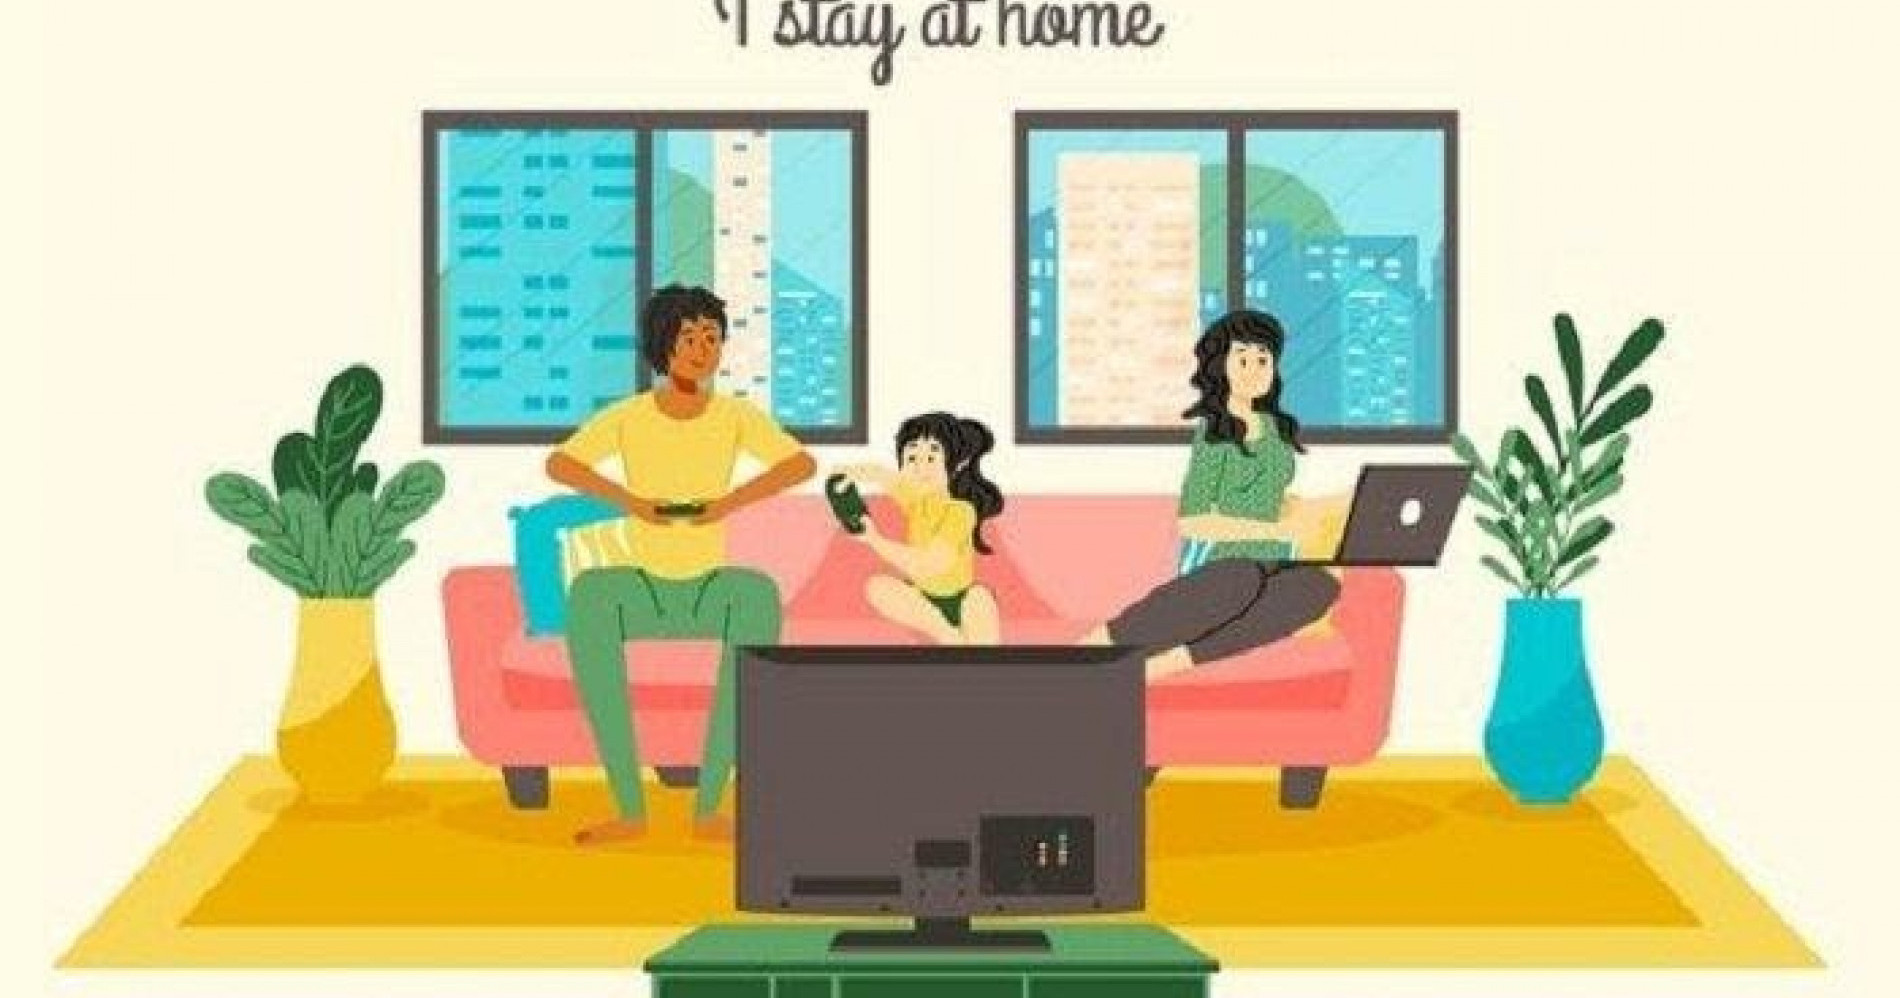 Situasi Stay at Home (sumber : https://www.google.com/amp/s/ternate.tribunnews.com/amp/2020/04/07/dirumahaja-selama-wabah-corona-ini-15-poster-stay-at-home-yang-bisa-dibagikan-ke-media-sosial)